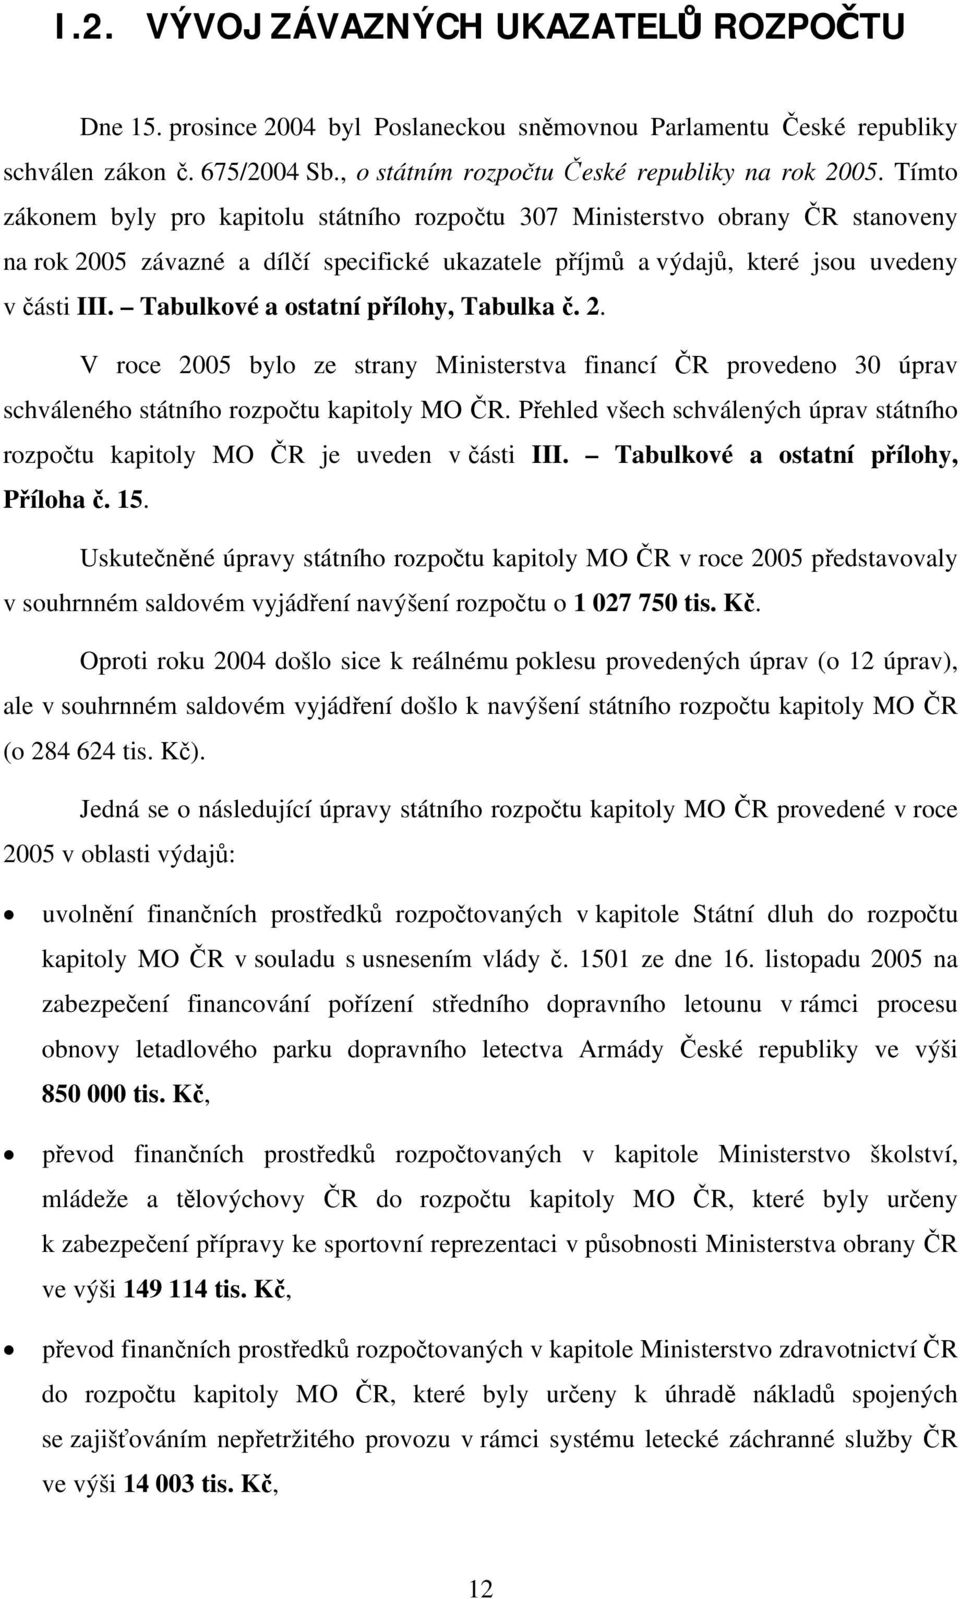 Tabulkové a ostatní přílohy, Tabulka č. 2. V roce 2005 bylo ze strany Ministerstva financí ČR provedeno 30 úprav schváleného státního rozpočtu kapitoly MO ČR.